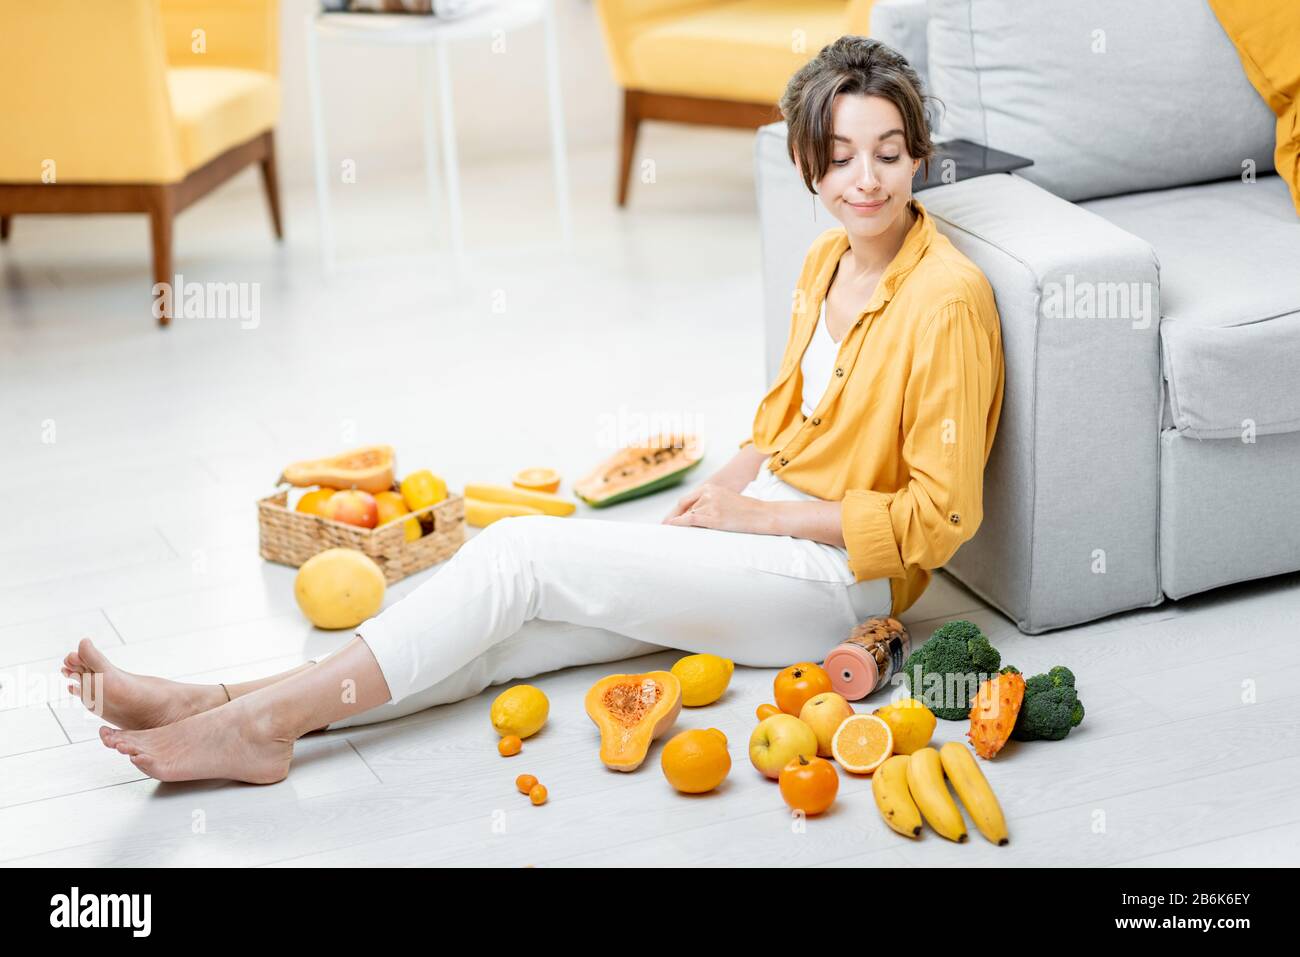 Ritratto di una giovane e allegra donna seduta con un sacco di frutta fresca e verdure sul pavimento a casa. Foto in giallo. Concetto di benessere, cibo sano e solitudine Foto Stock